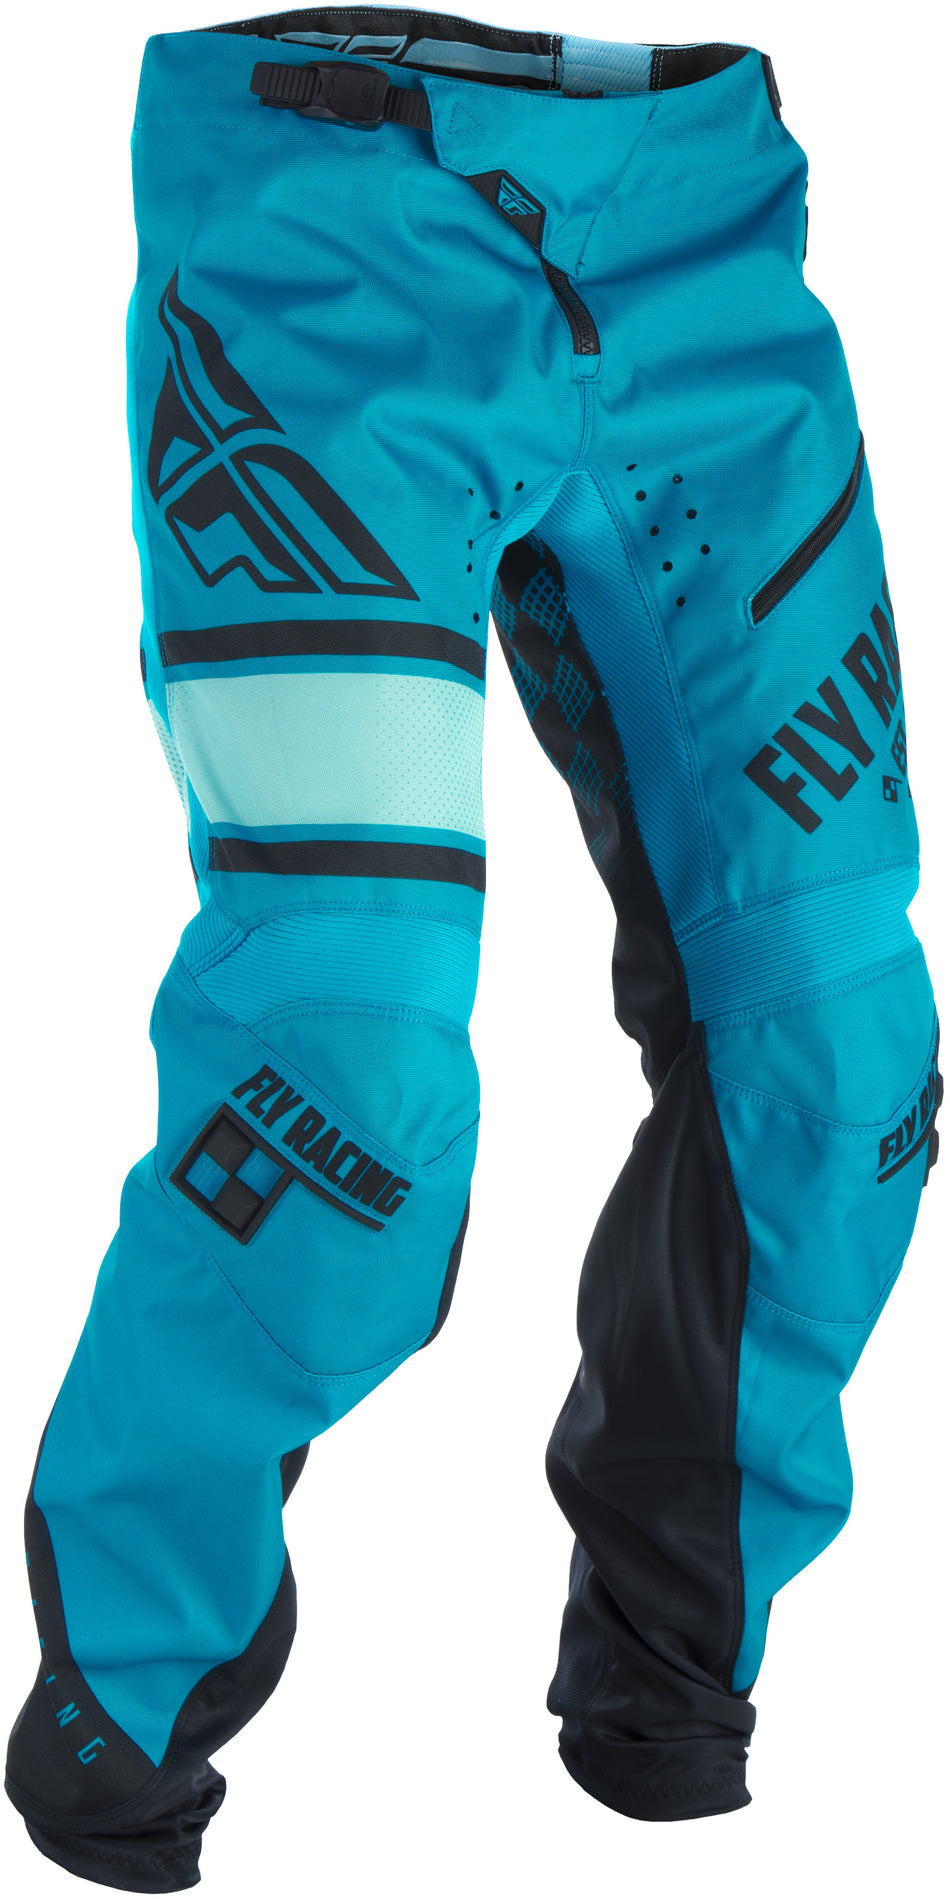 FLY RACING Kinetic Era Bicycle Pants Blue/Black Sz 24 371-02124